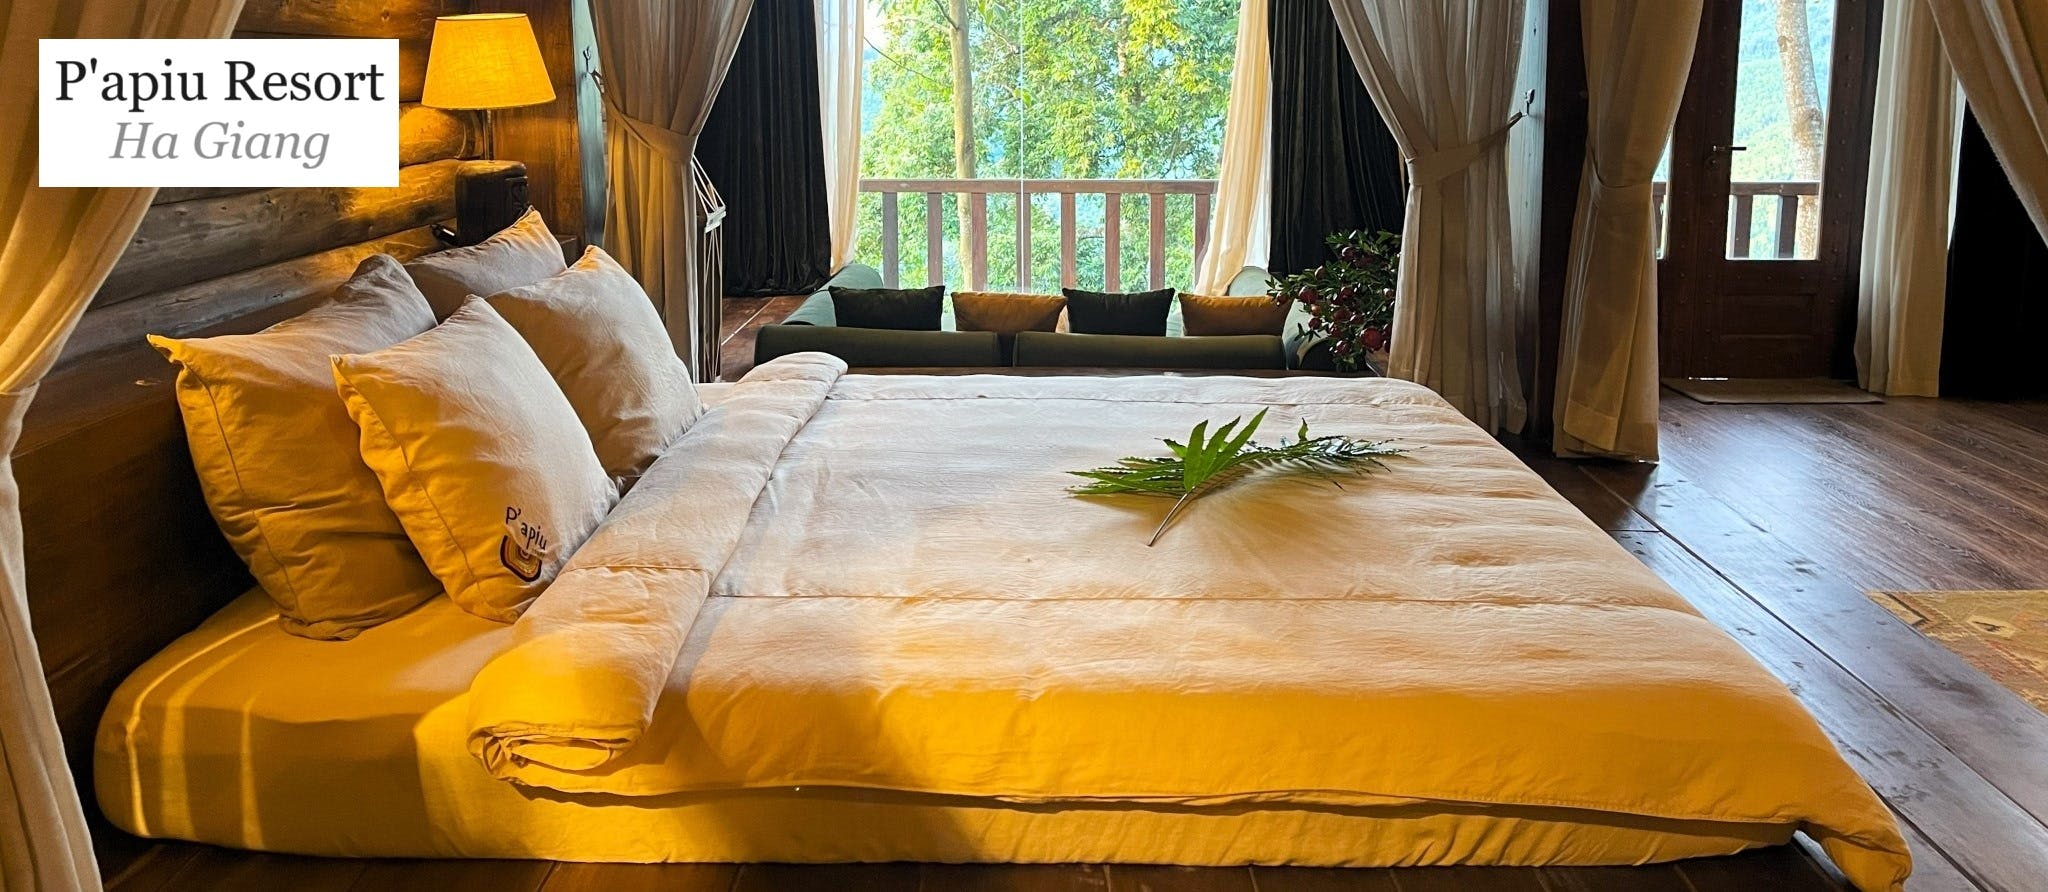 P'apiu Resort, Ha Giang, Vietnam, Review